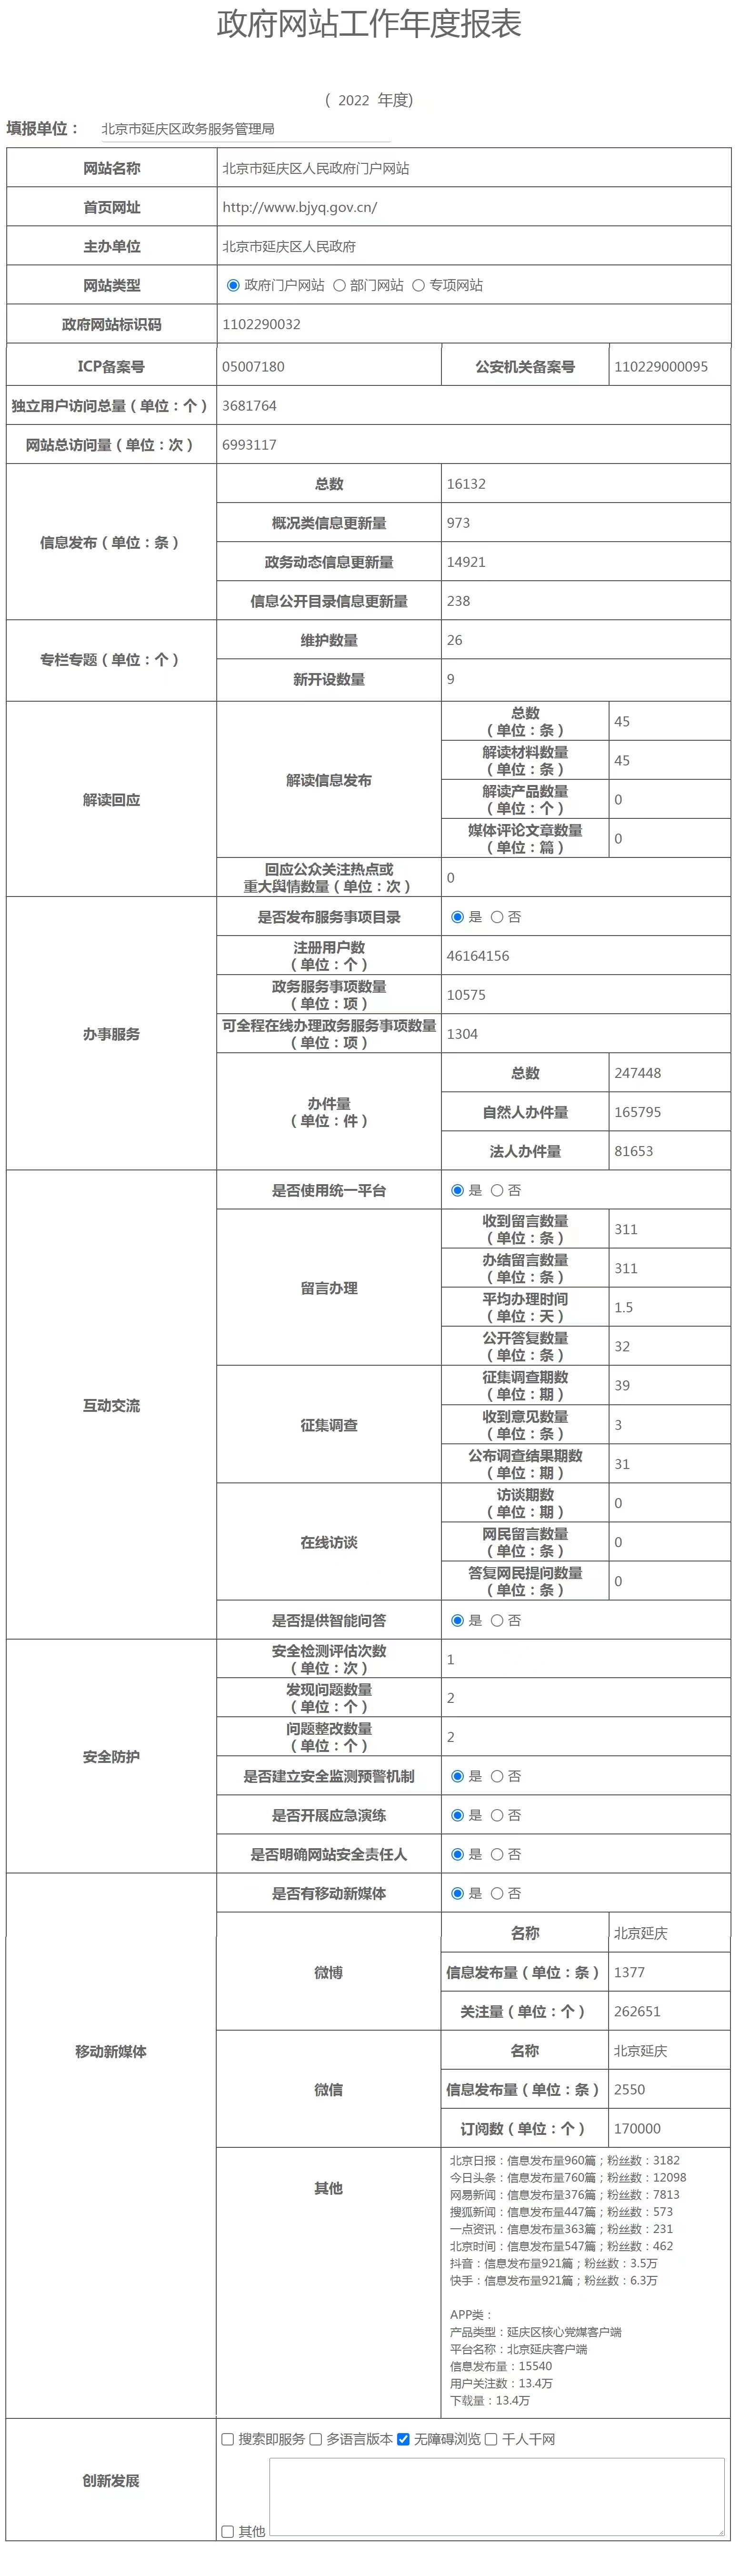 北京市延慶區人民政府2022年政府網站年度工作報表